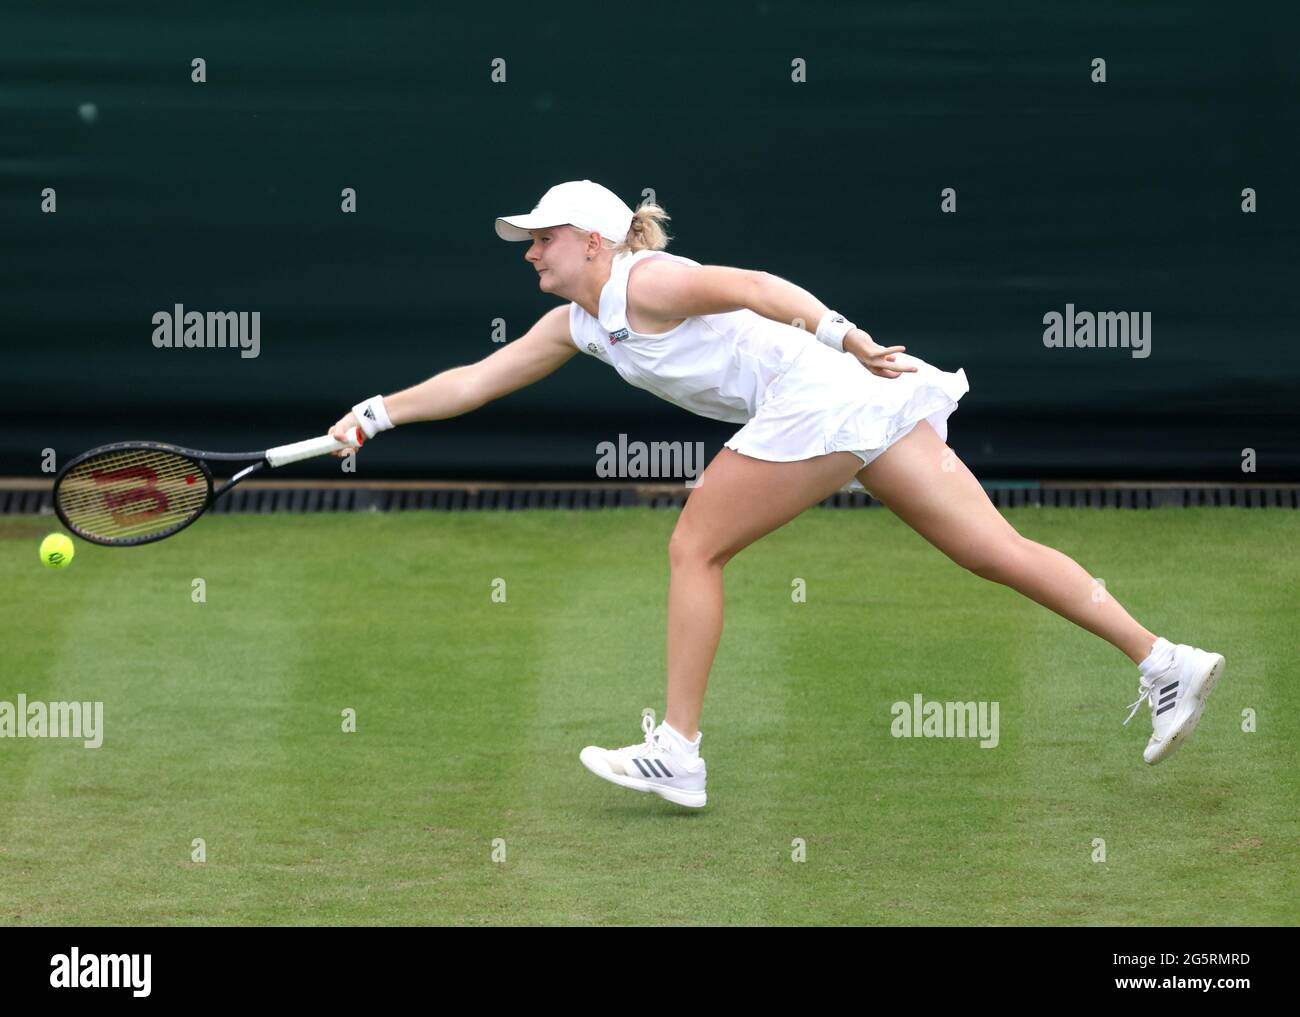 Im All England Lawn Tennis and Croquet Club, Wimbledon, spielte sie während ihres ersten Damen-Einzel-Spiels gegen Coco Gauff auf dem Platz 2 am zweiten Tag von Wimbledon. Bilddatum: Dienstag, 29. Juni 2021. Stockfoto